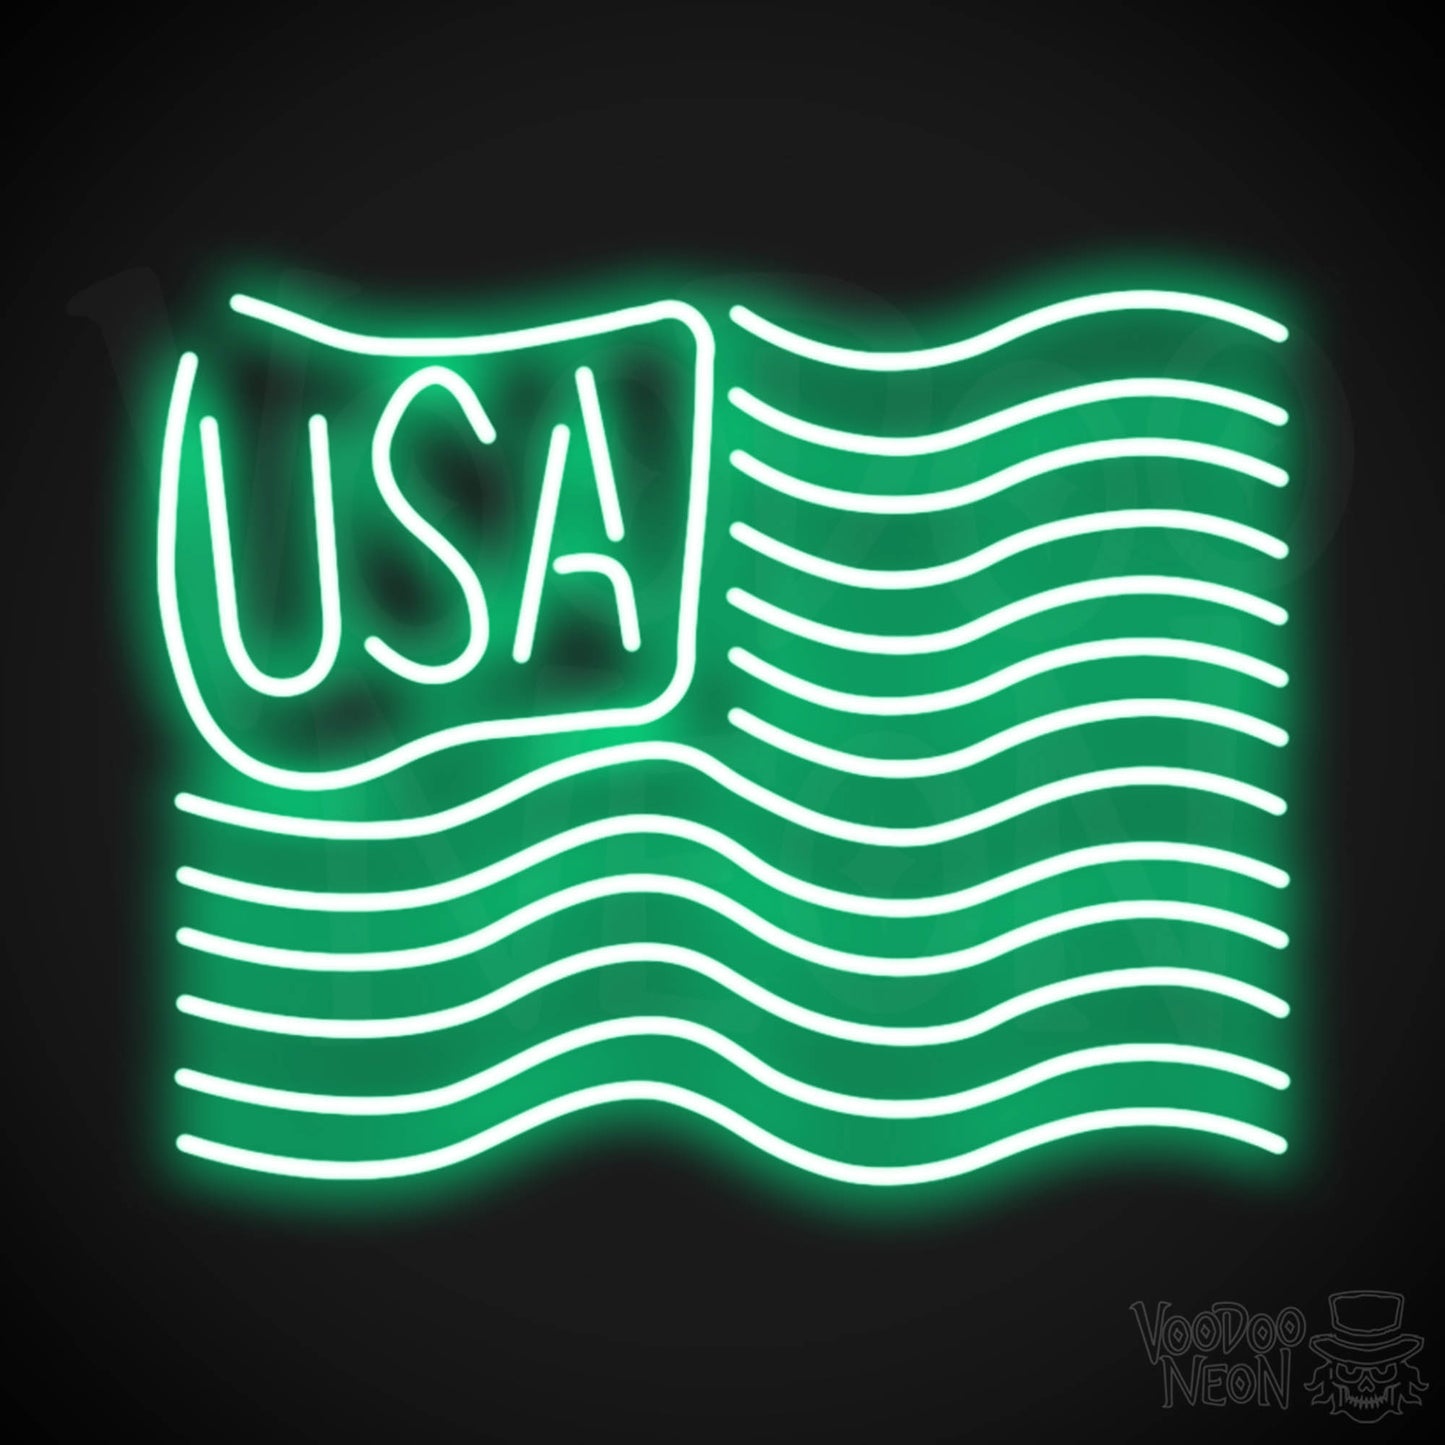 American Flag Neon Sign - Neon American Flag Sign - Neon USA Flag - Color Green